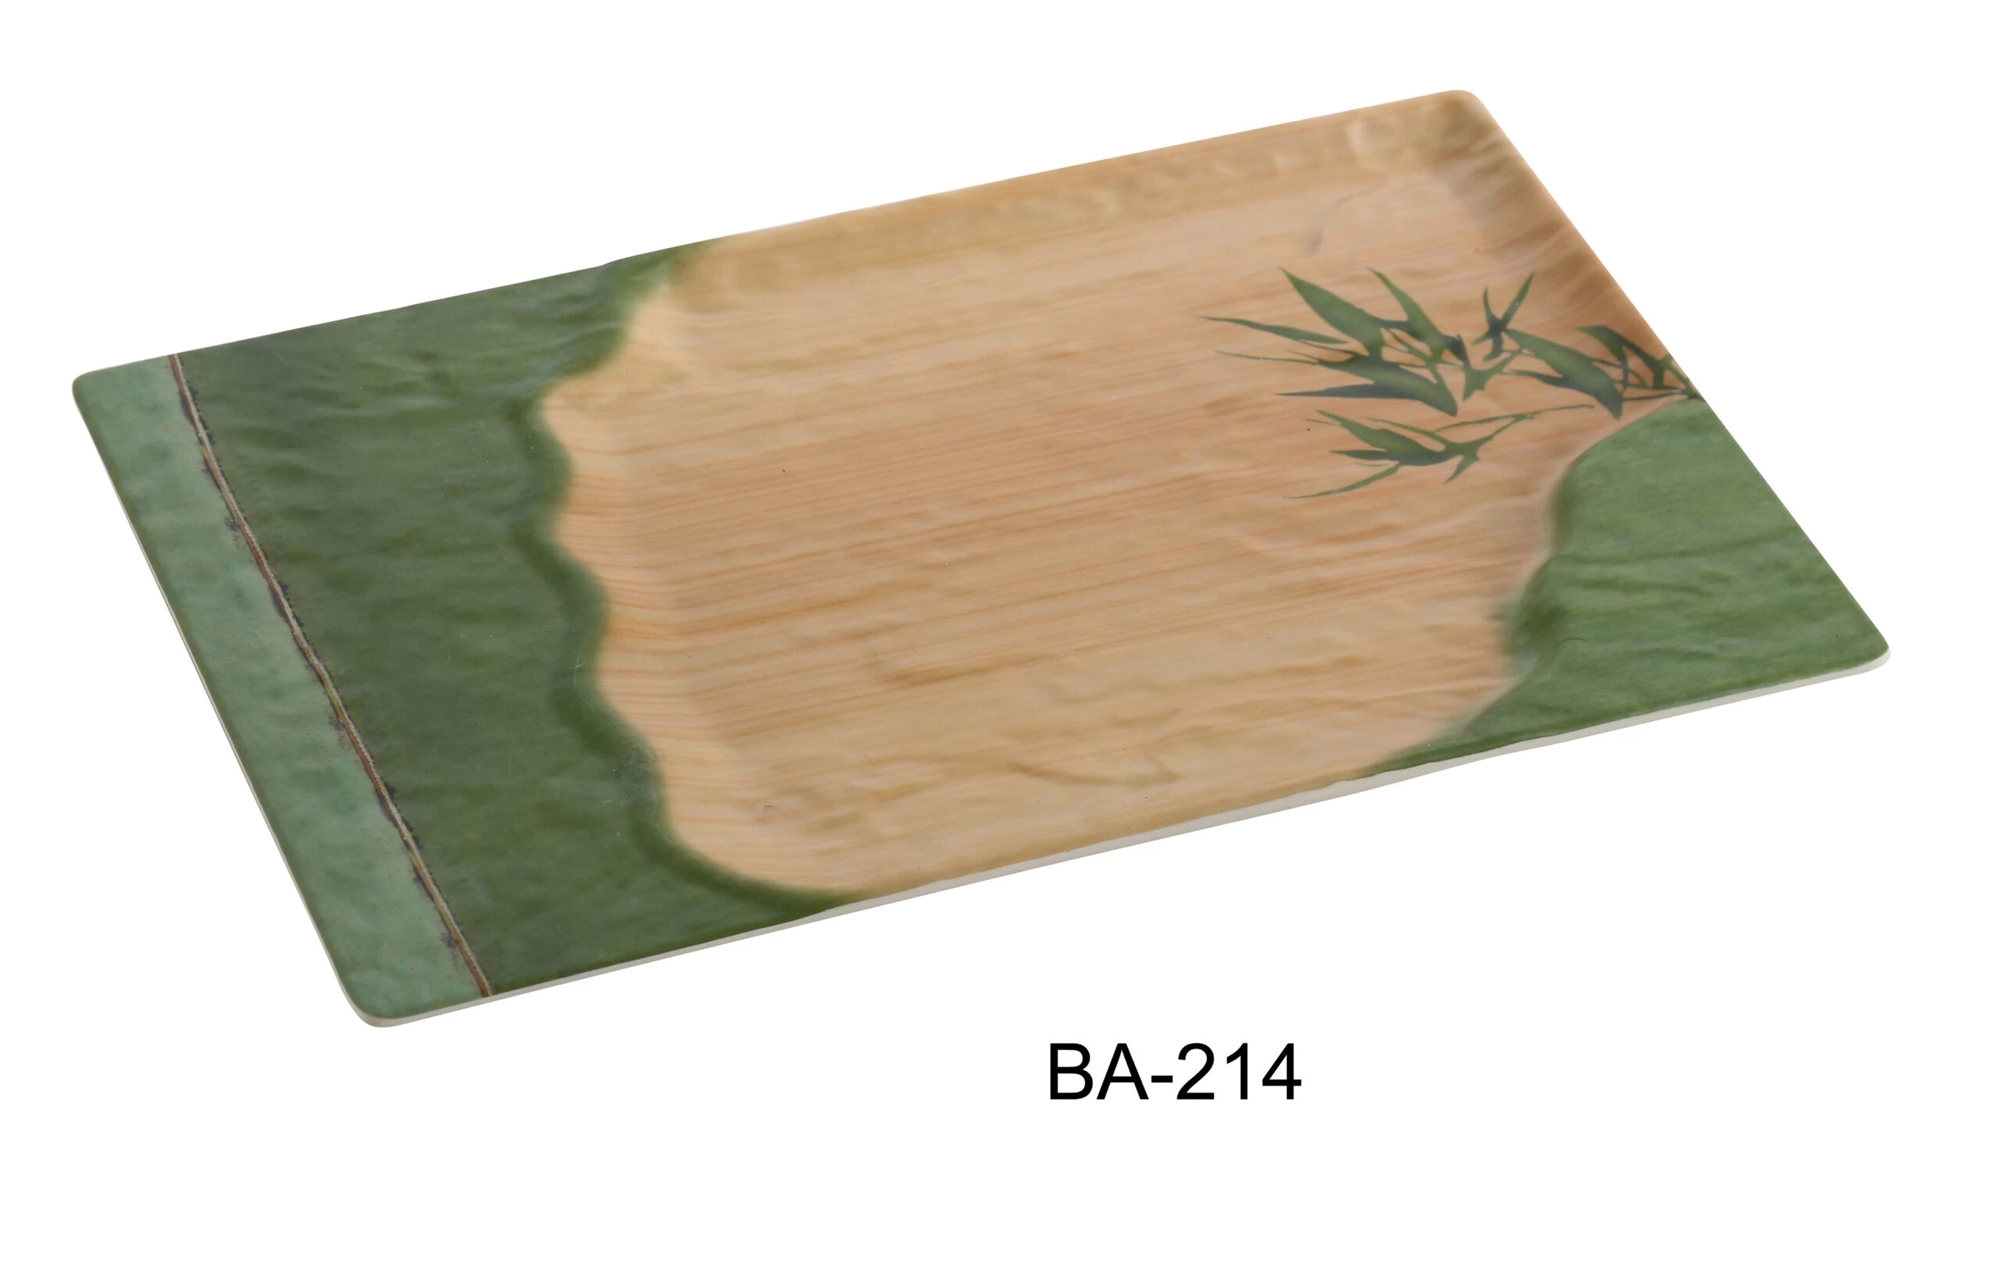 Yanco BA-214 Bamboo Style 14" X 8 1/2" Rectangular Plate